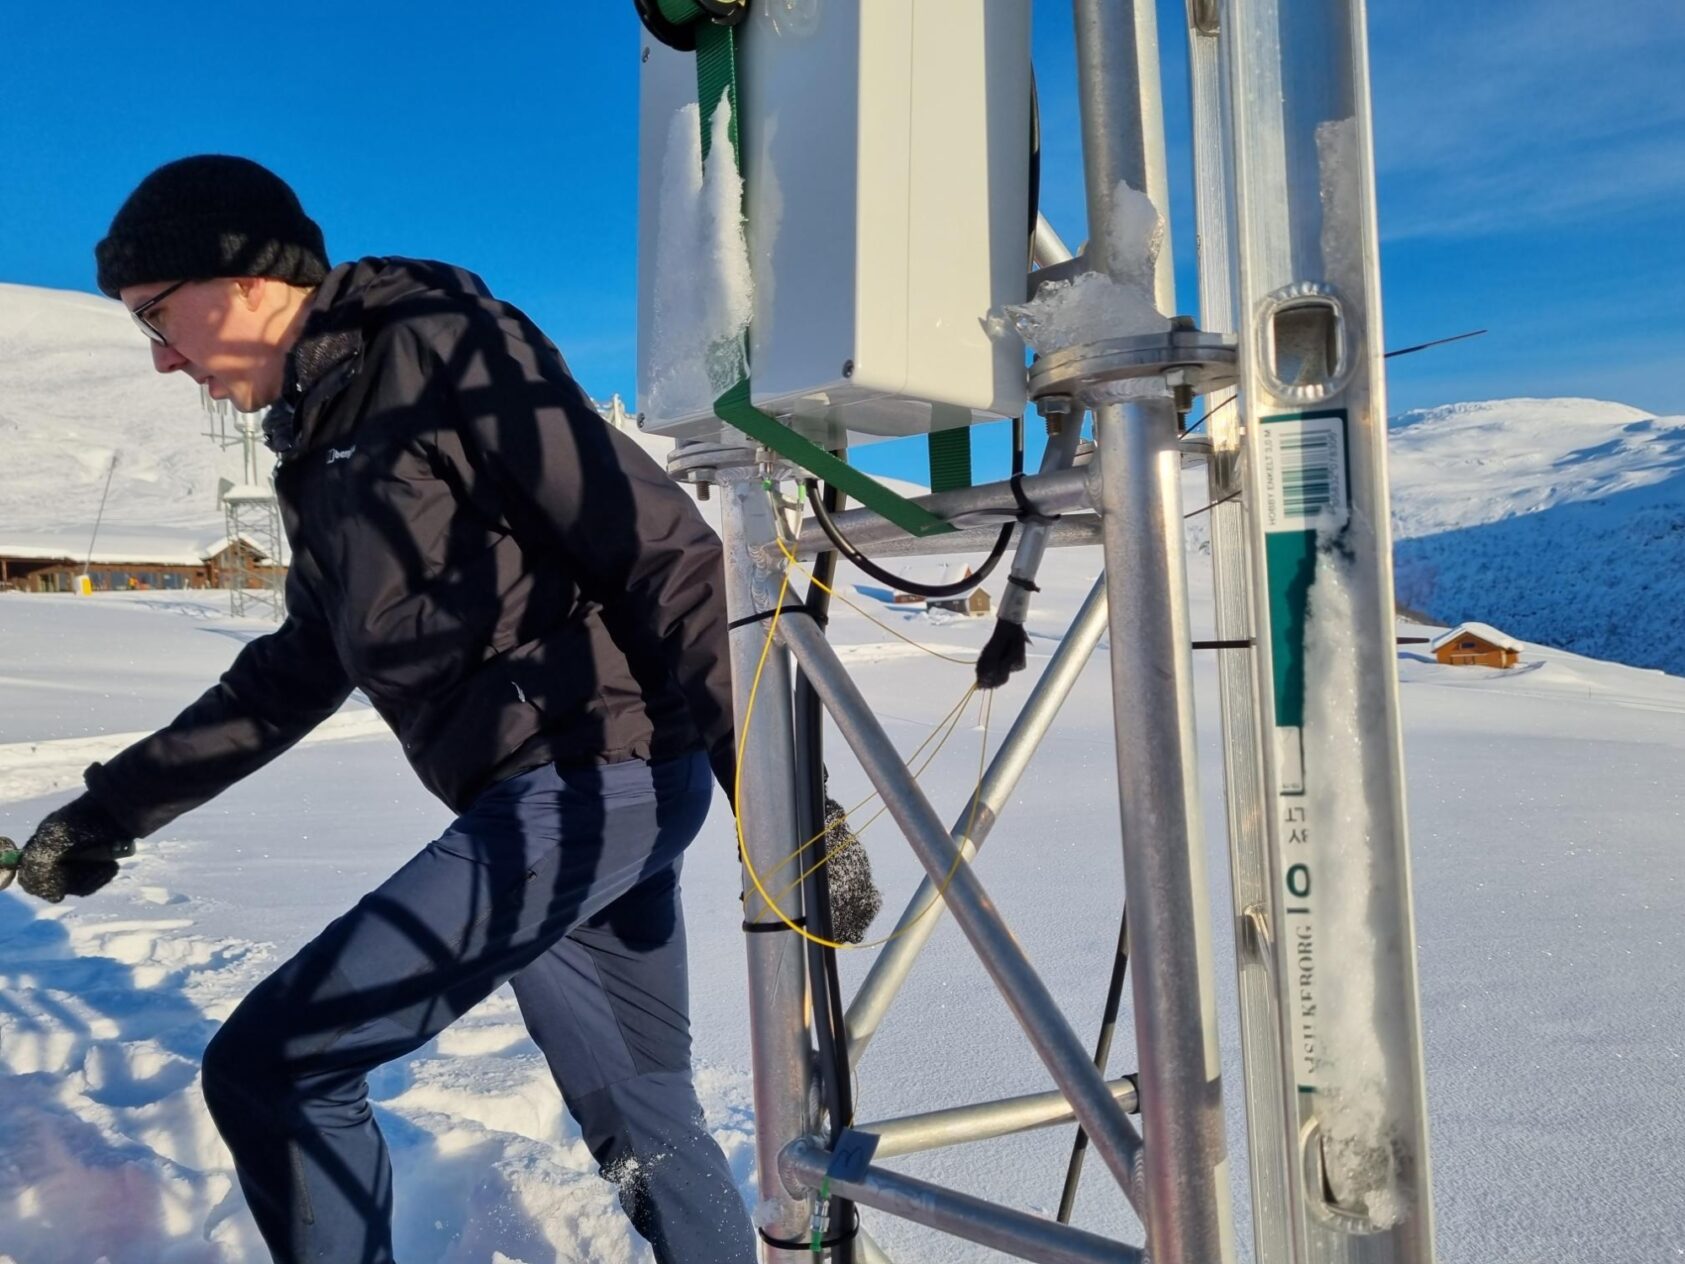 Peter James Thomas, NORCE, Her ser vi NORCE-forsker, Adam Funnell, og en del av teknikken som fanger opp og sender videre signalene fra sensorene som ligger på bakken under snøen., 20230119 113246, , 